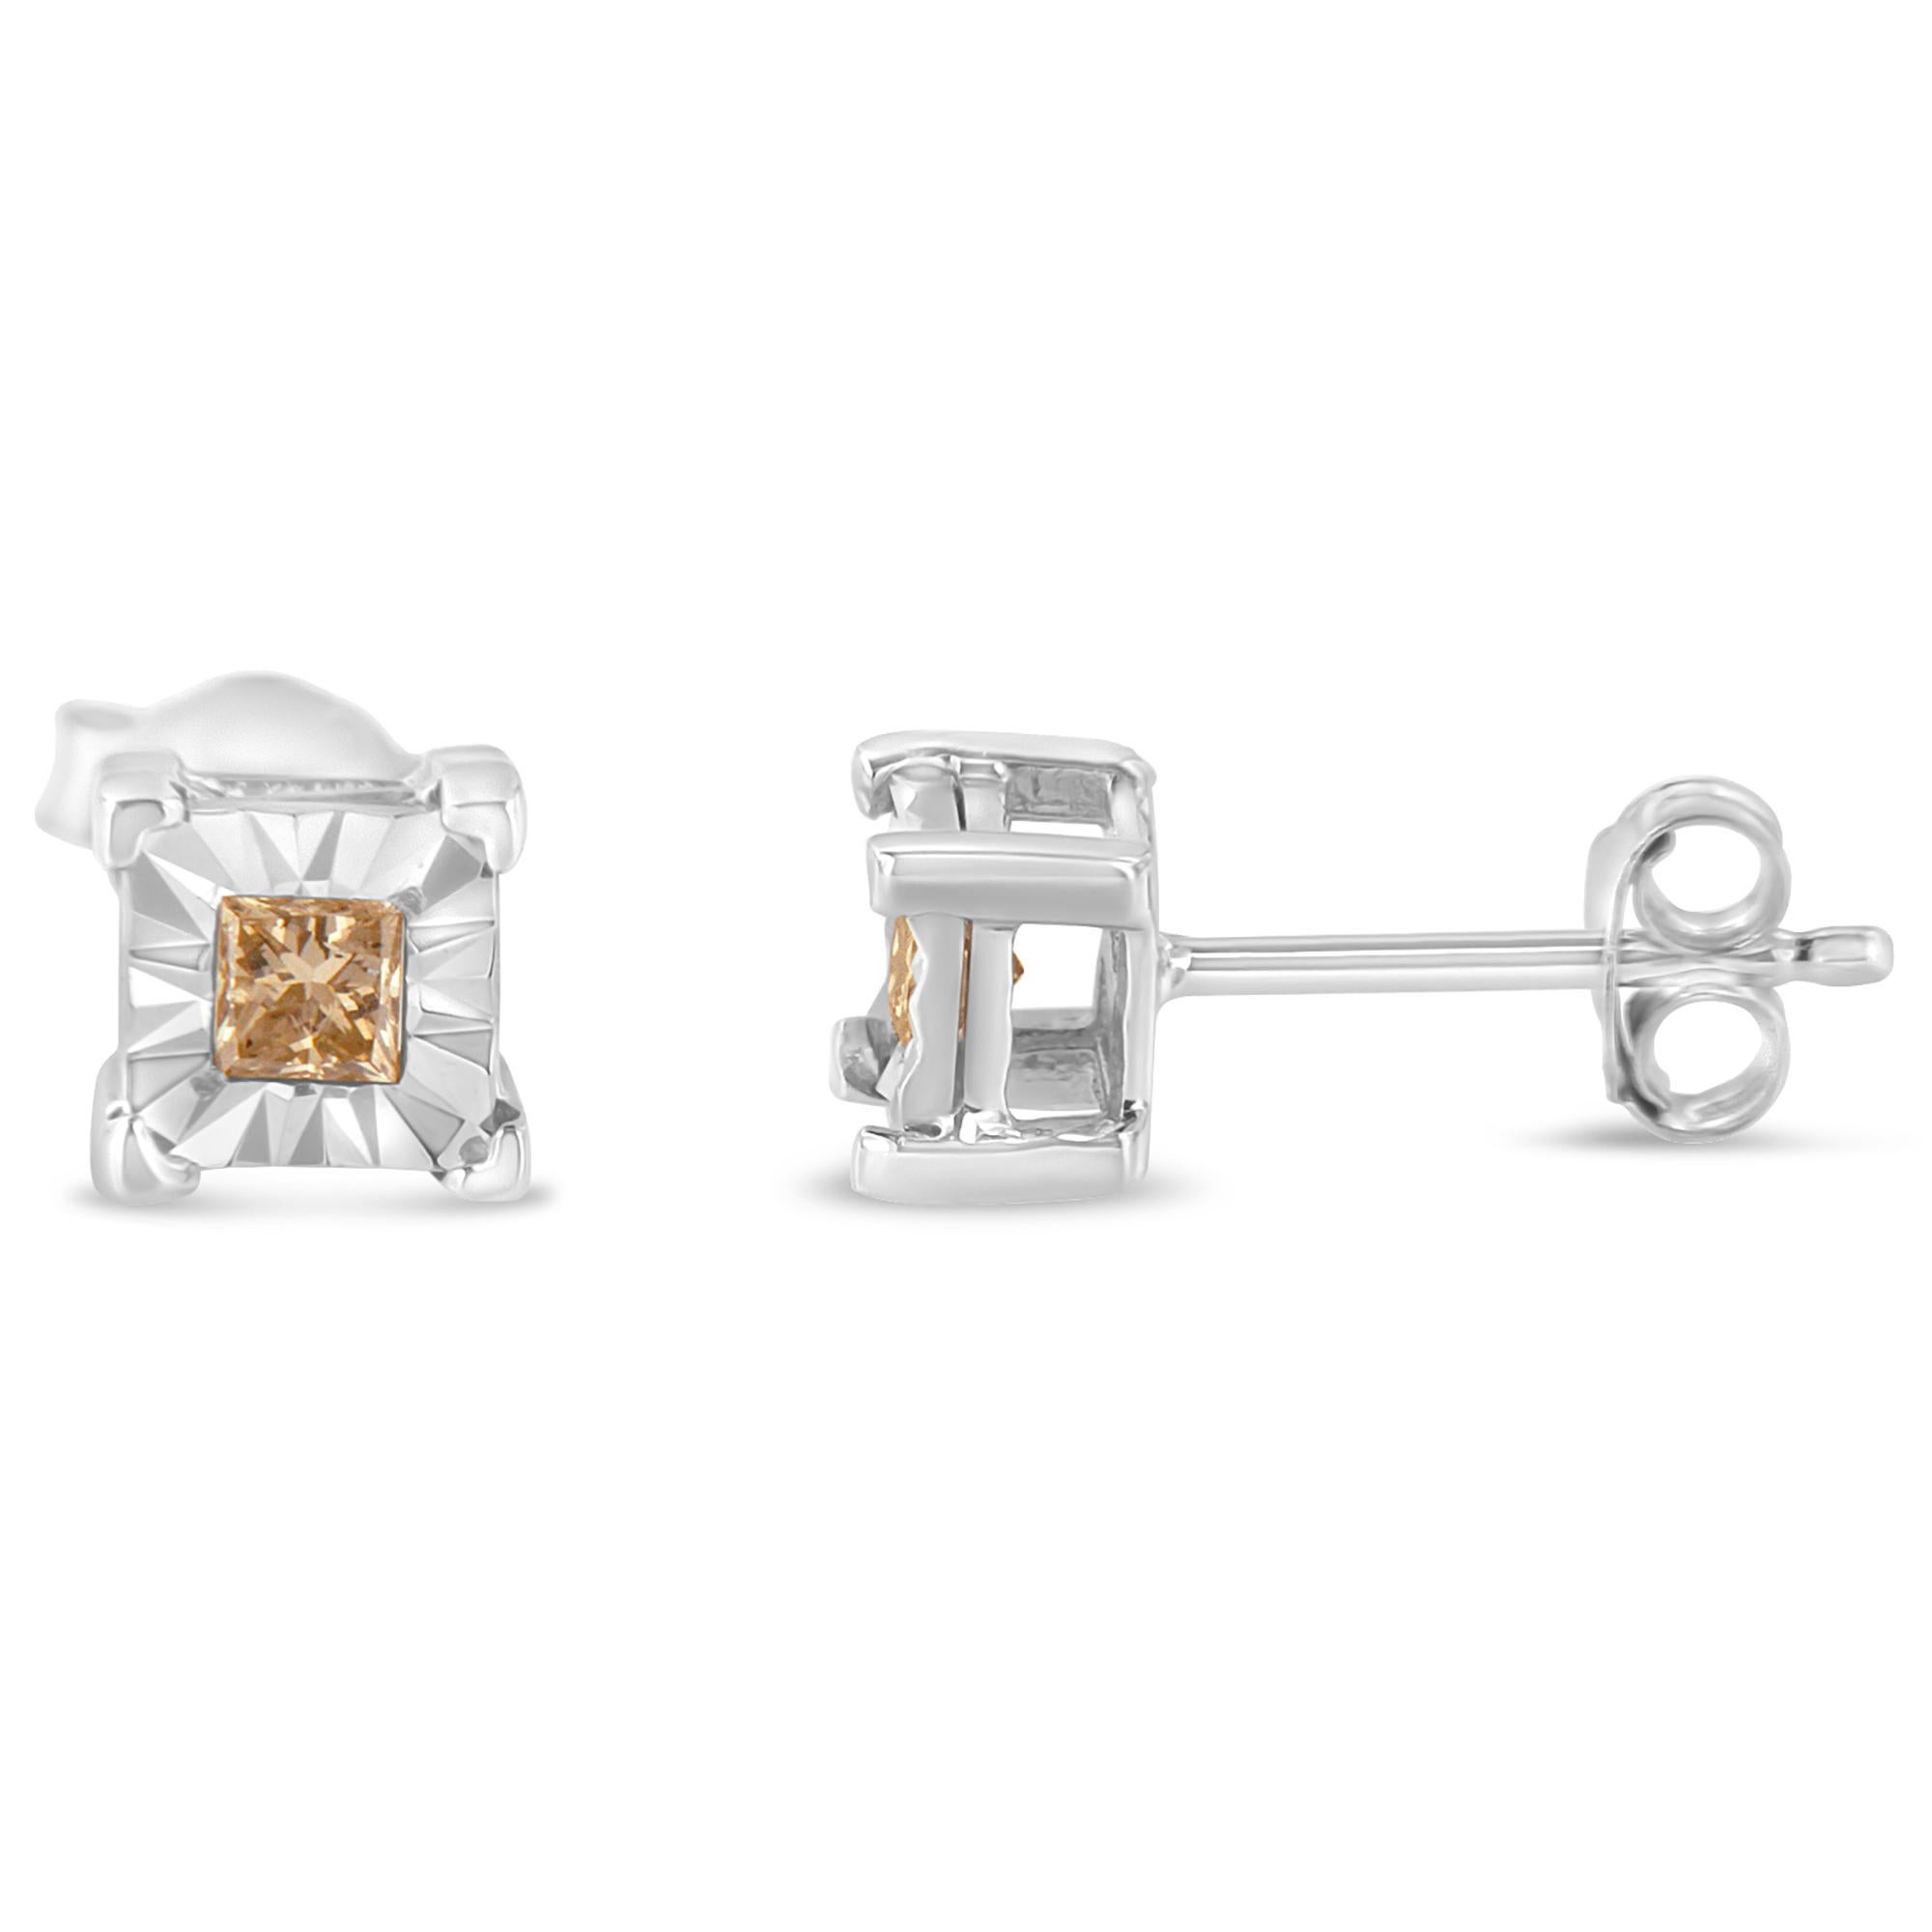 Zwei prächtige weiße Diamanten sitzen in einer Zackenfassung auf diesen funkelnden Ohrsteckern. Diese diamantenen Ohrstecker sind aus Sterlingsilber gefertigt und mit einer Hochglanzoberfläche versehen. Diese atemberaubenden Silberohrringe sind mit